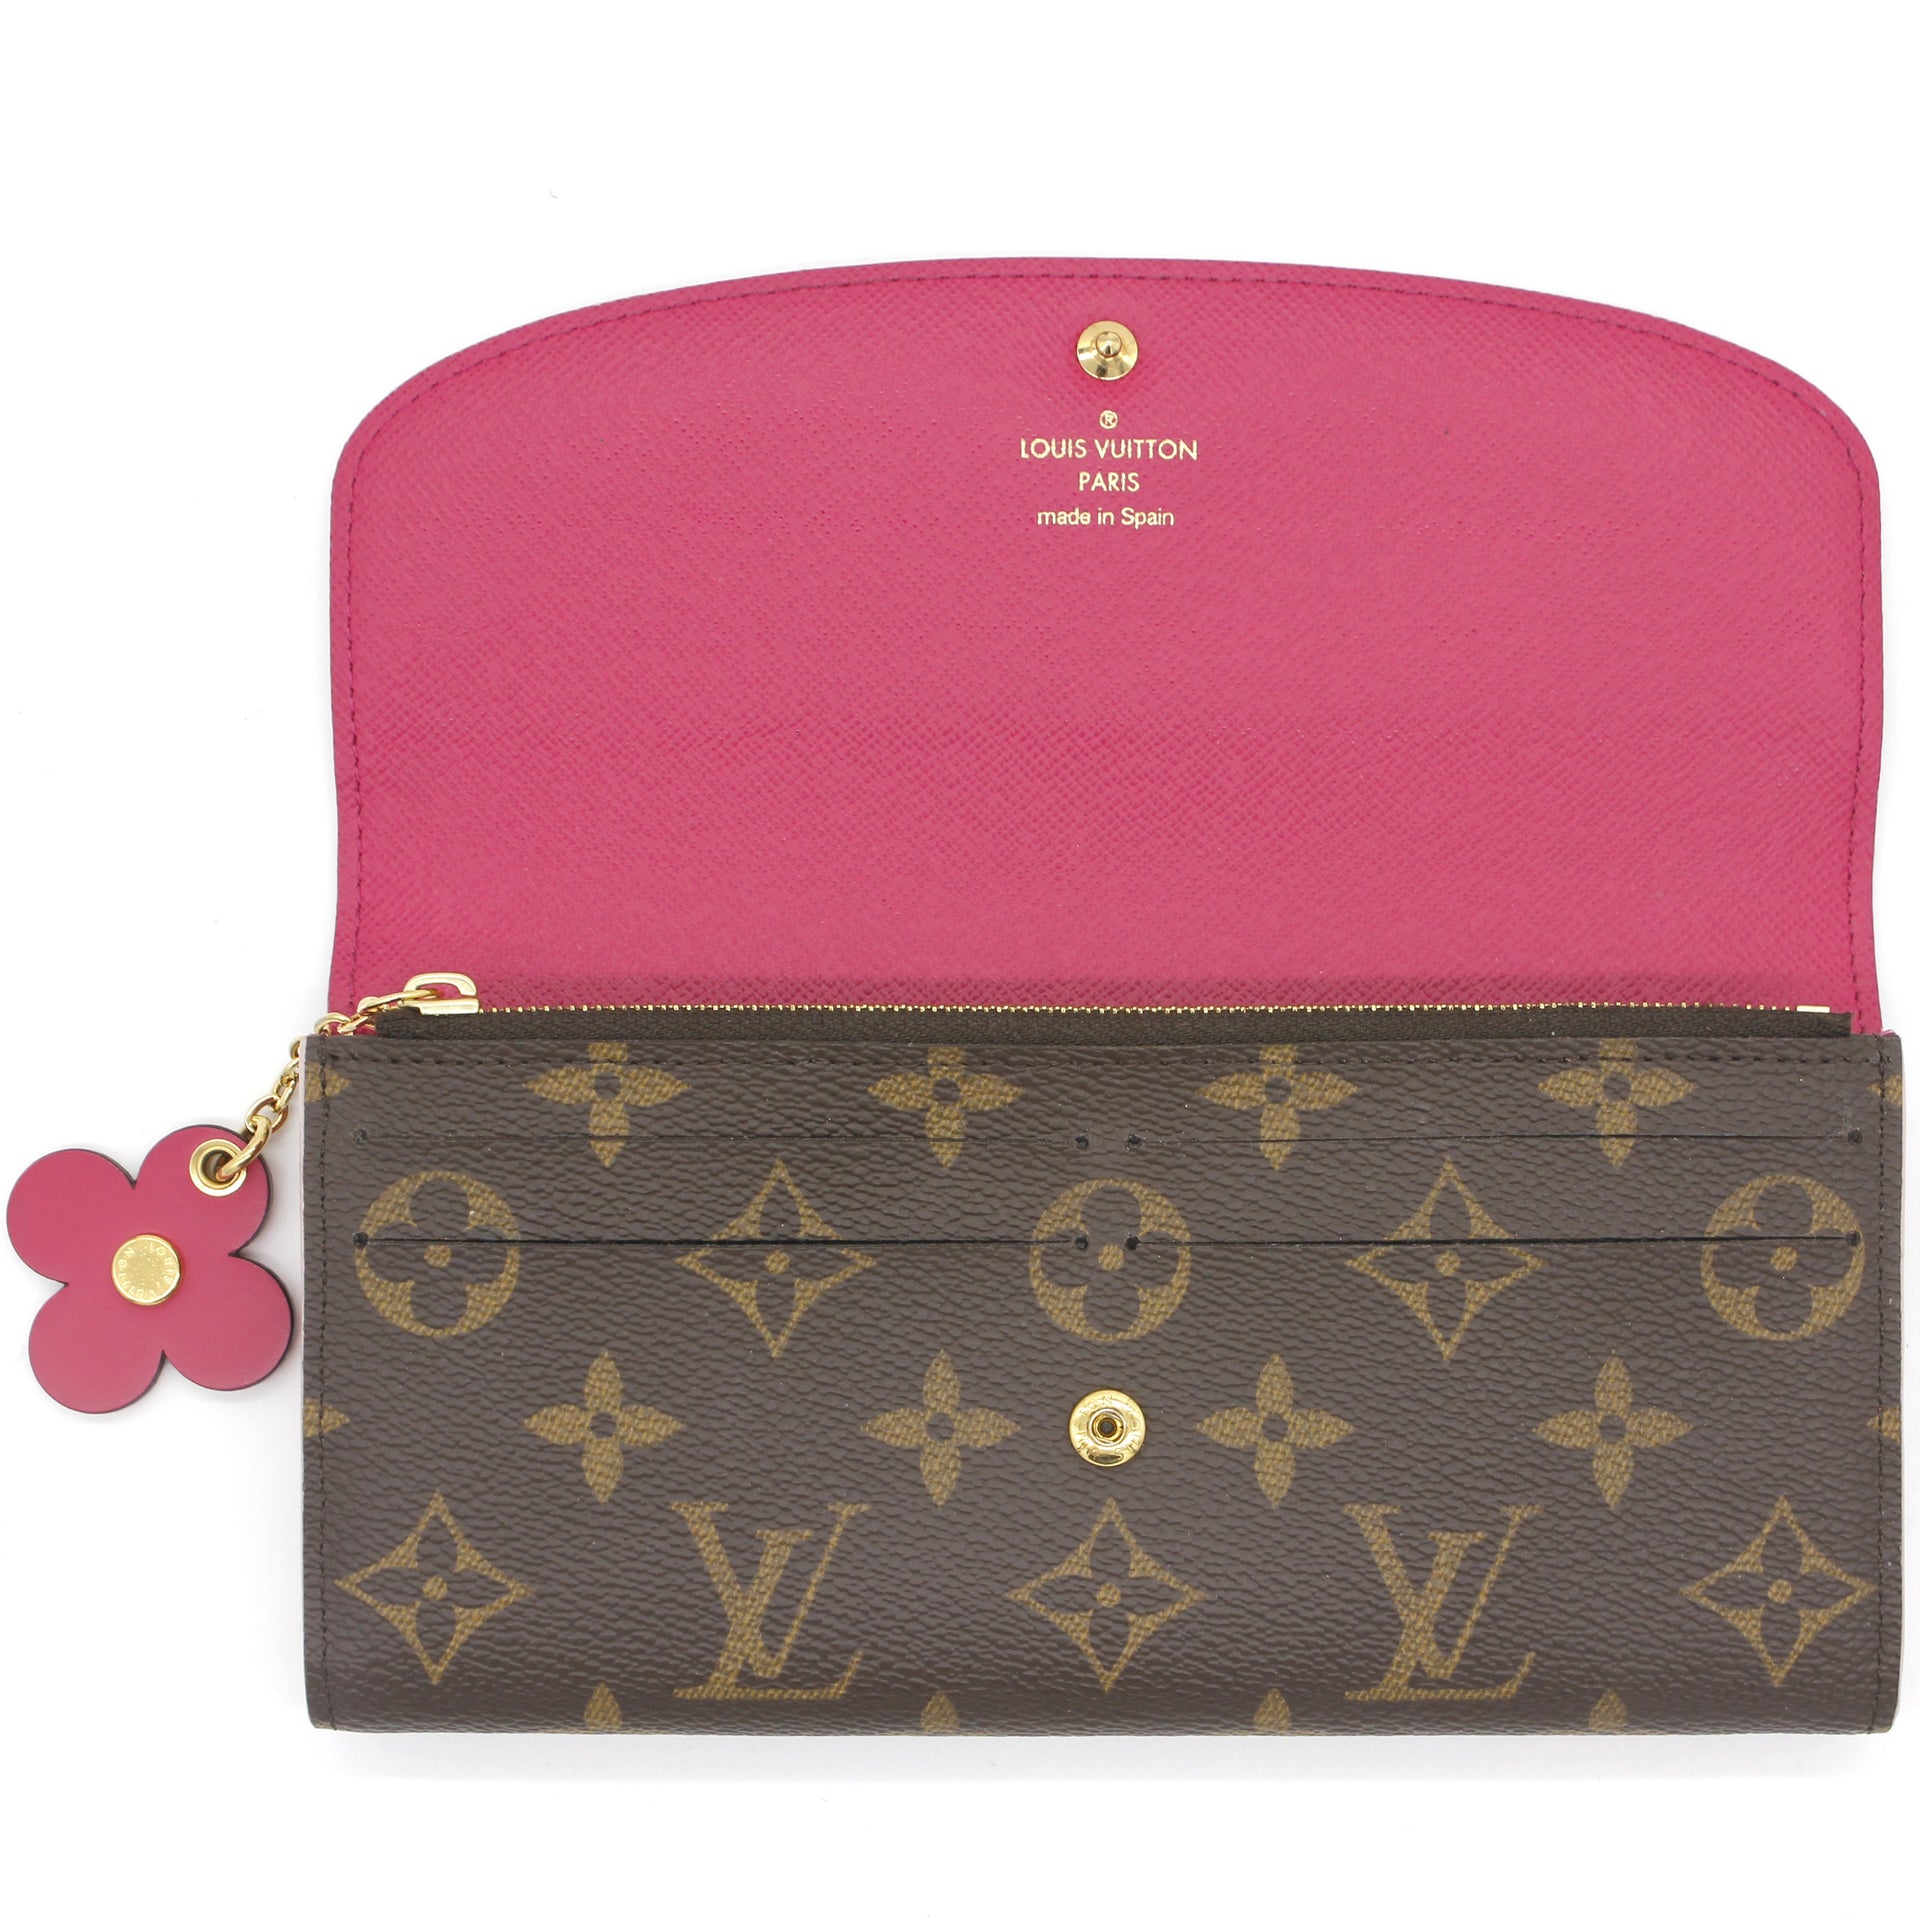 Louis Vuitton Emilie Flower Wallet NEW condition